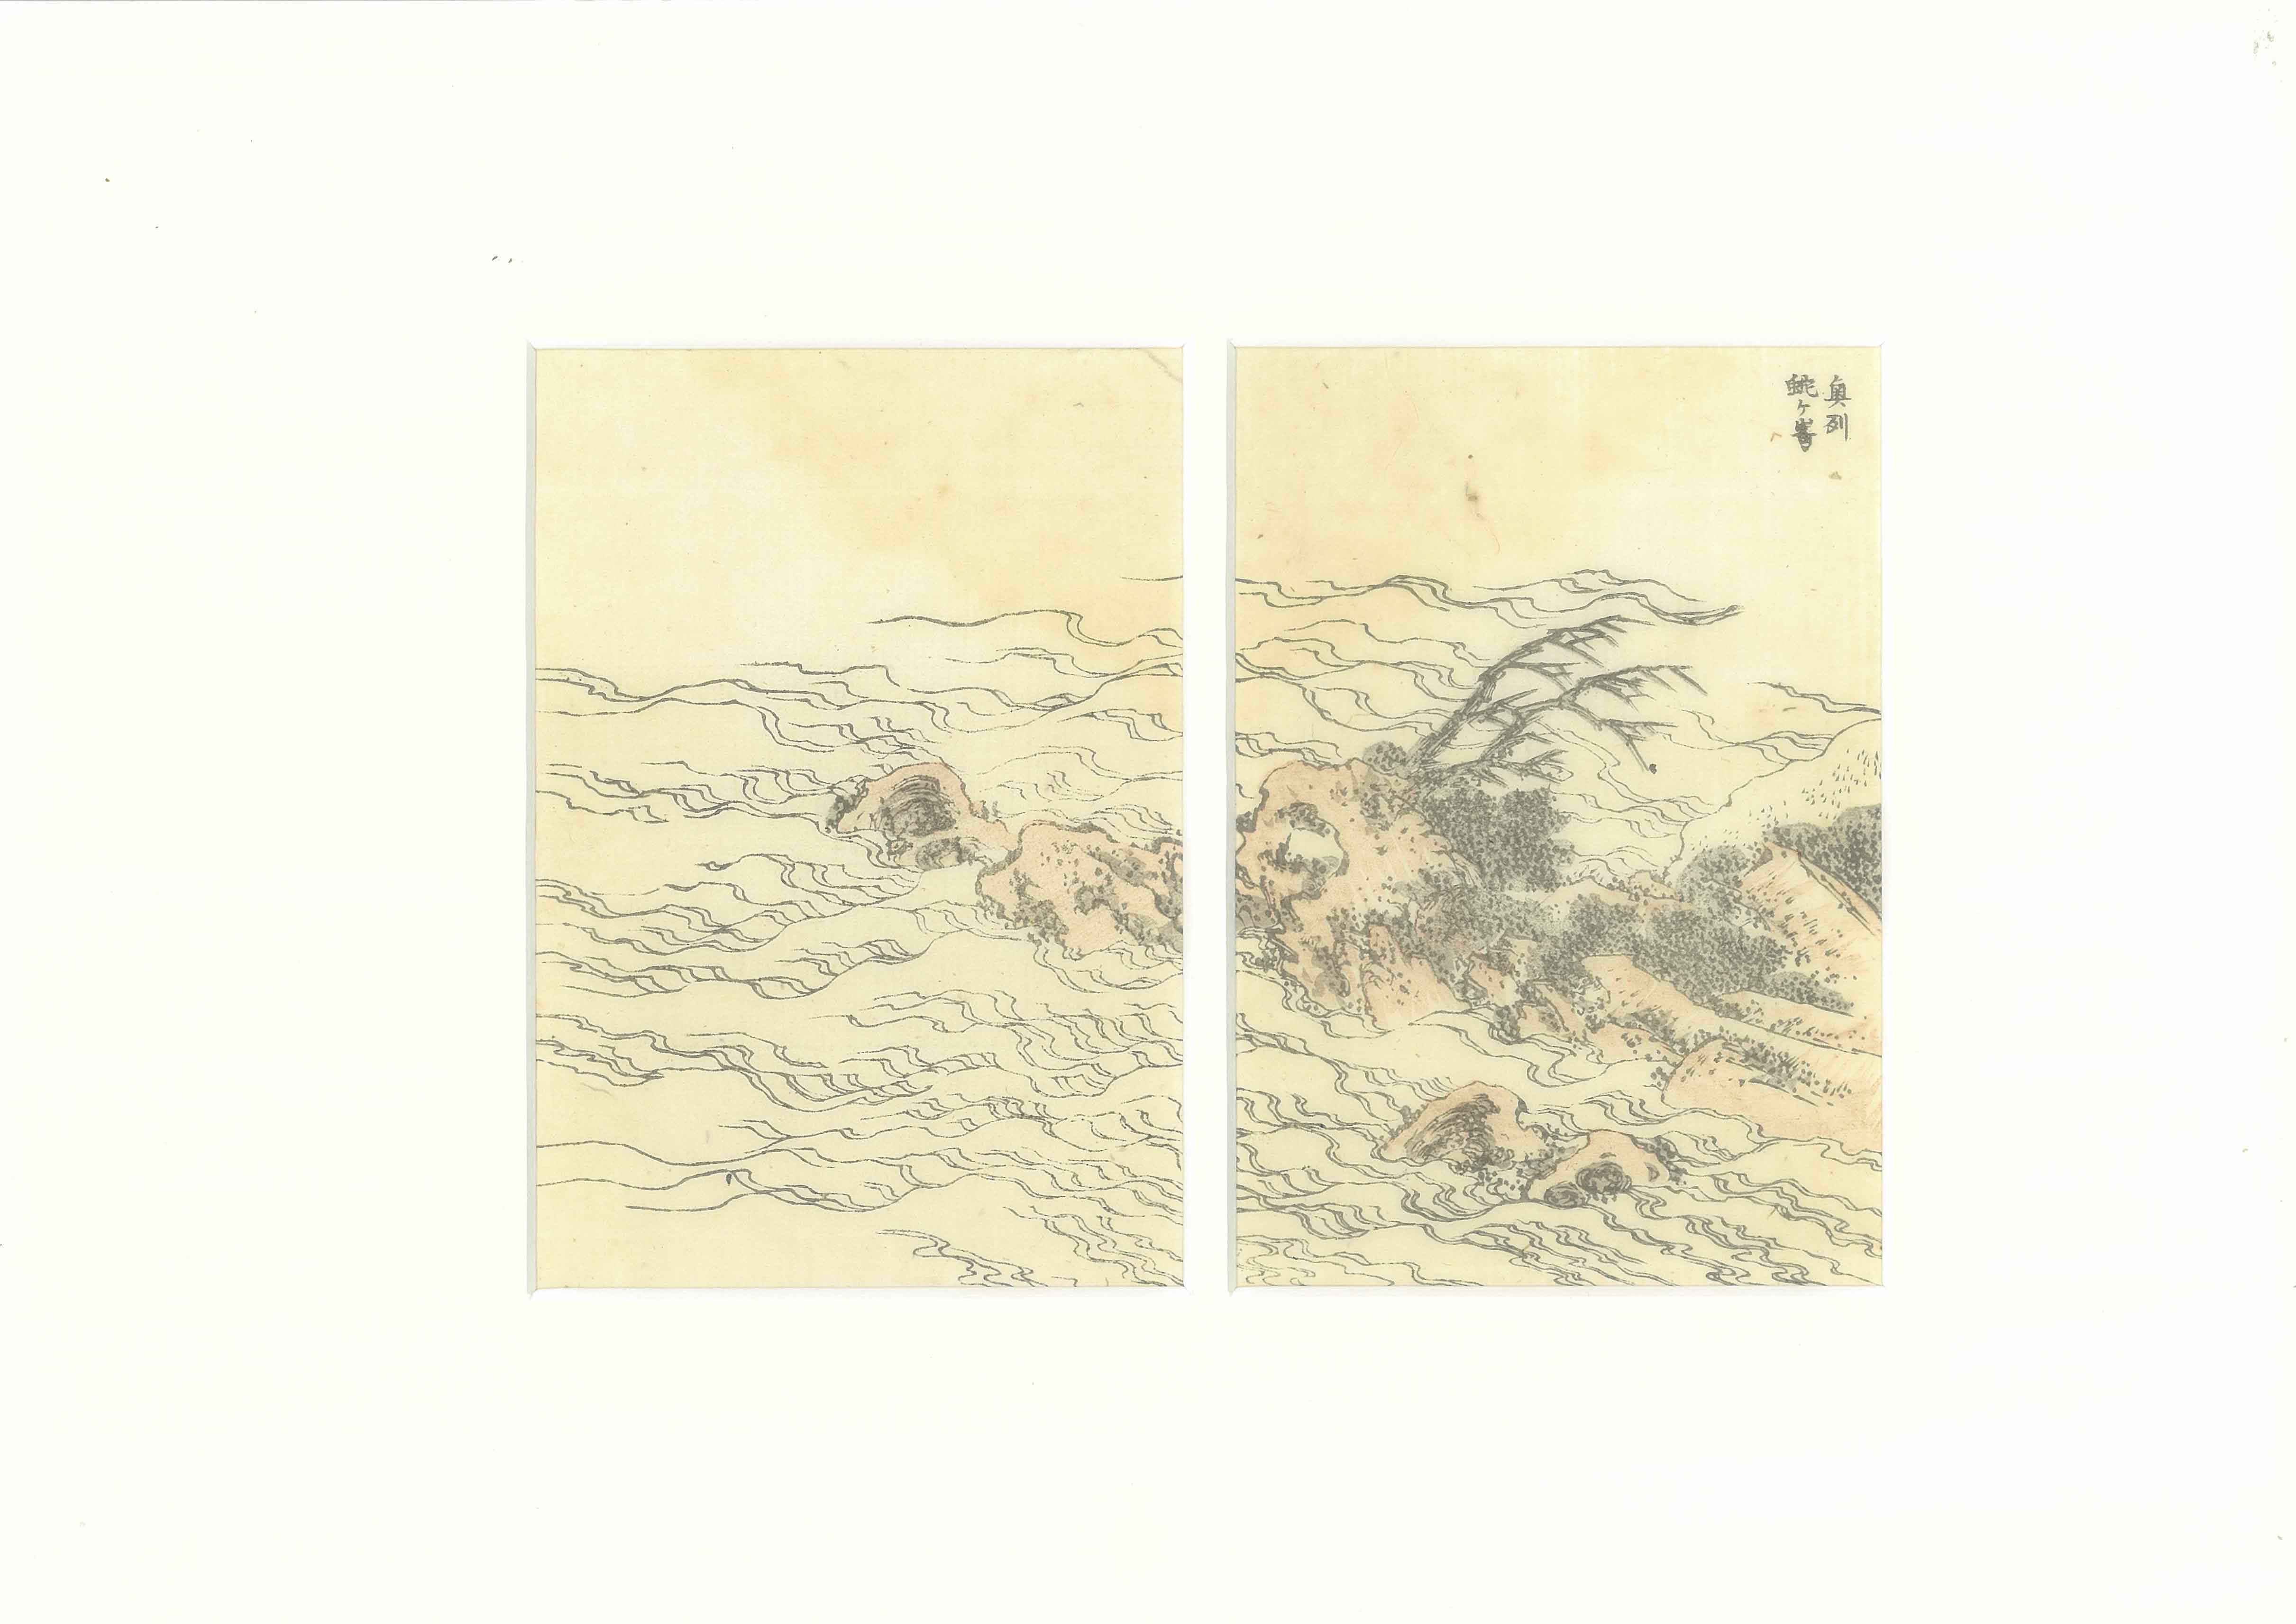 Jyagatake by the Sea c.1830